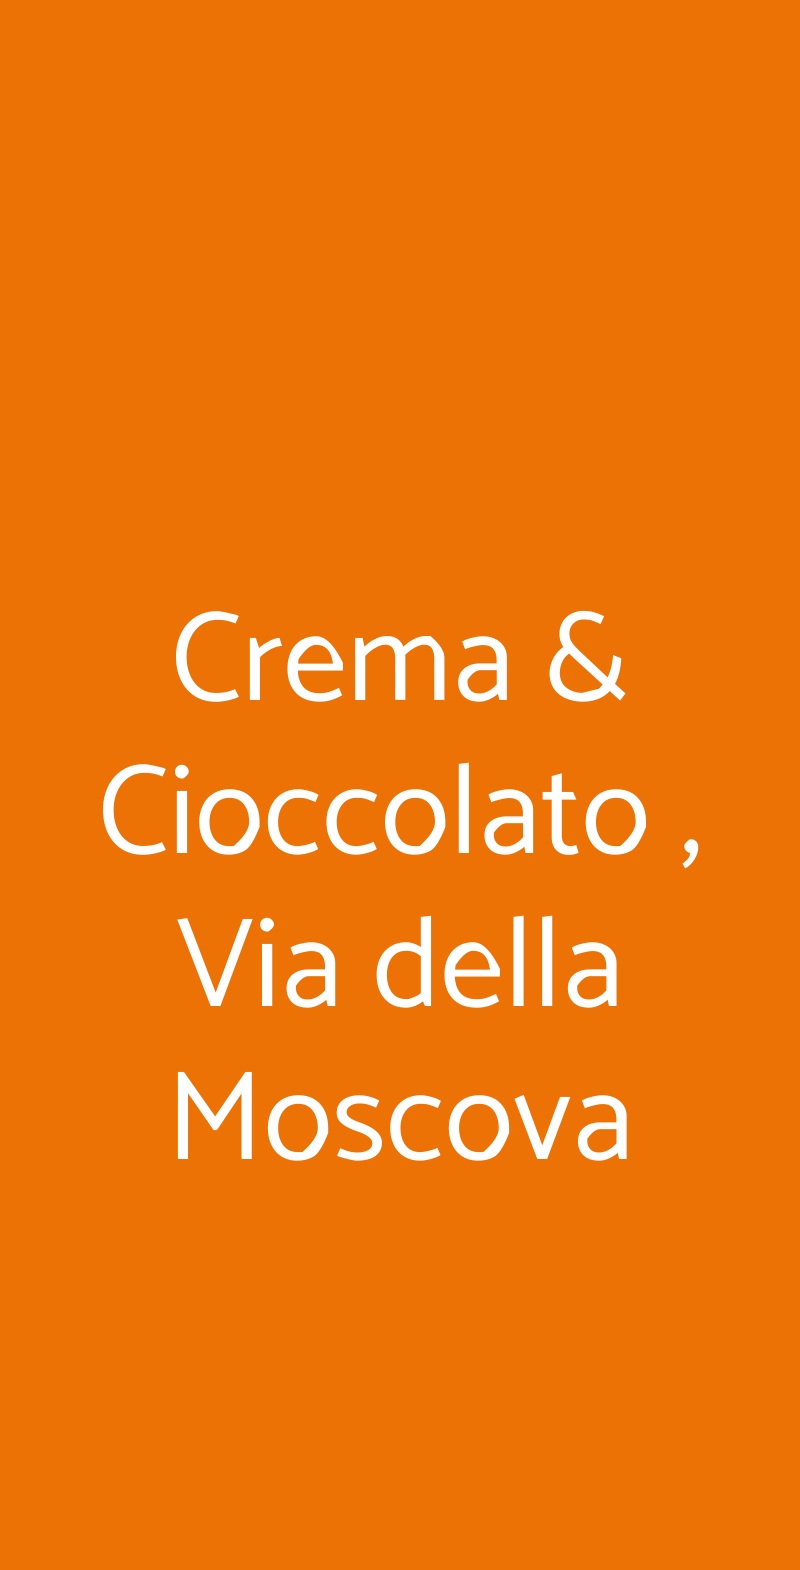 Crema & Cioccolato , Via della Moscova Milano menù 1 pagina